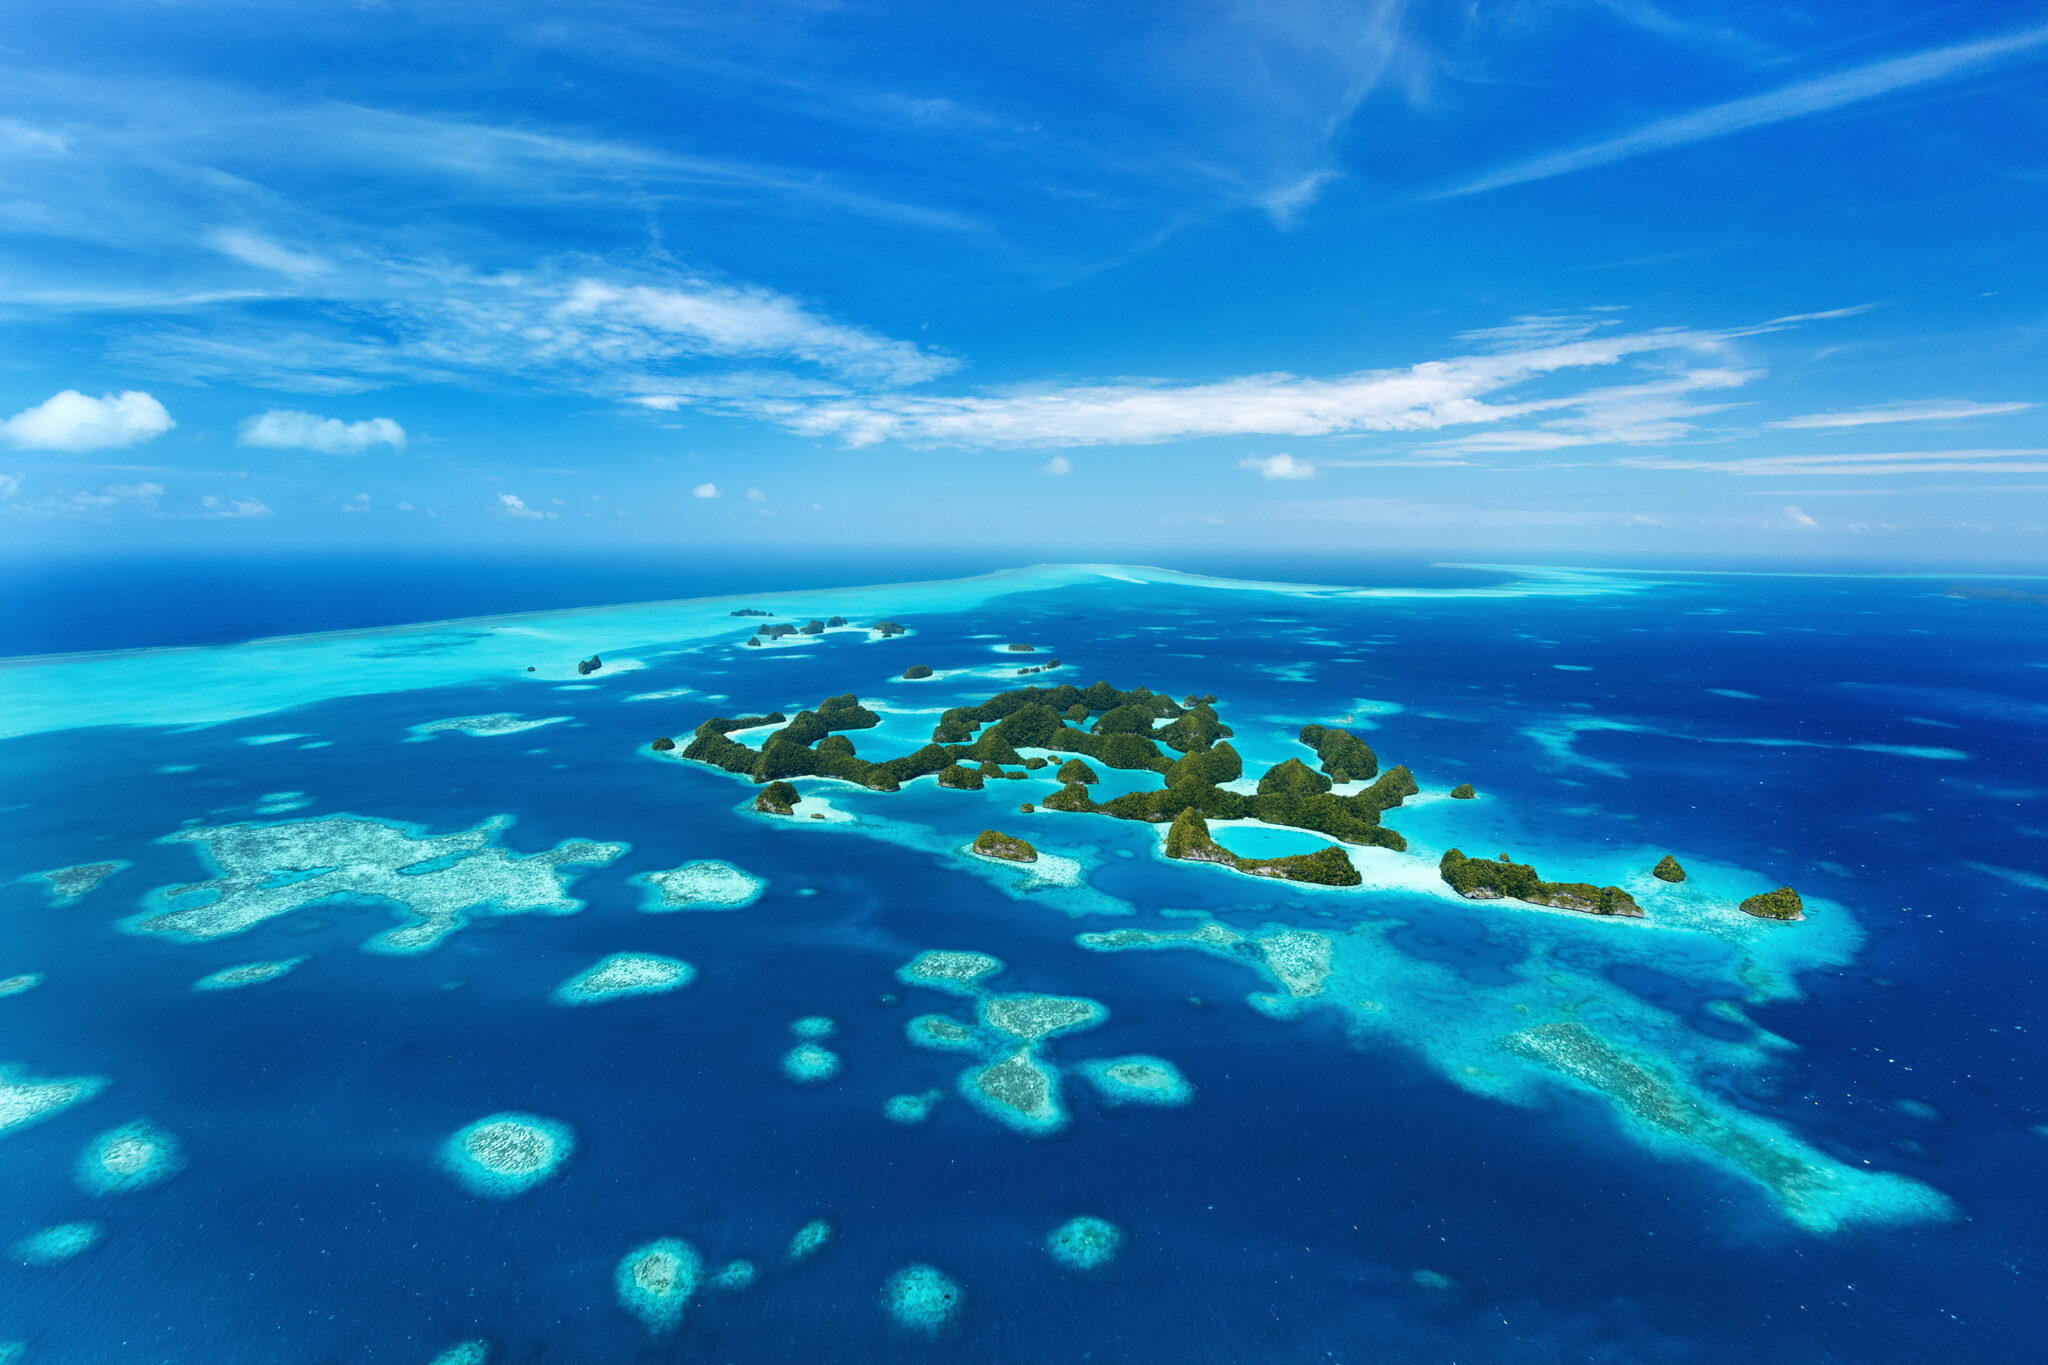 Palau National Marine Sanctuary Protection Zone